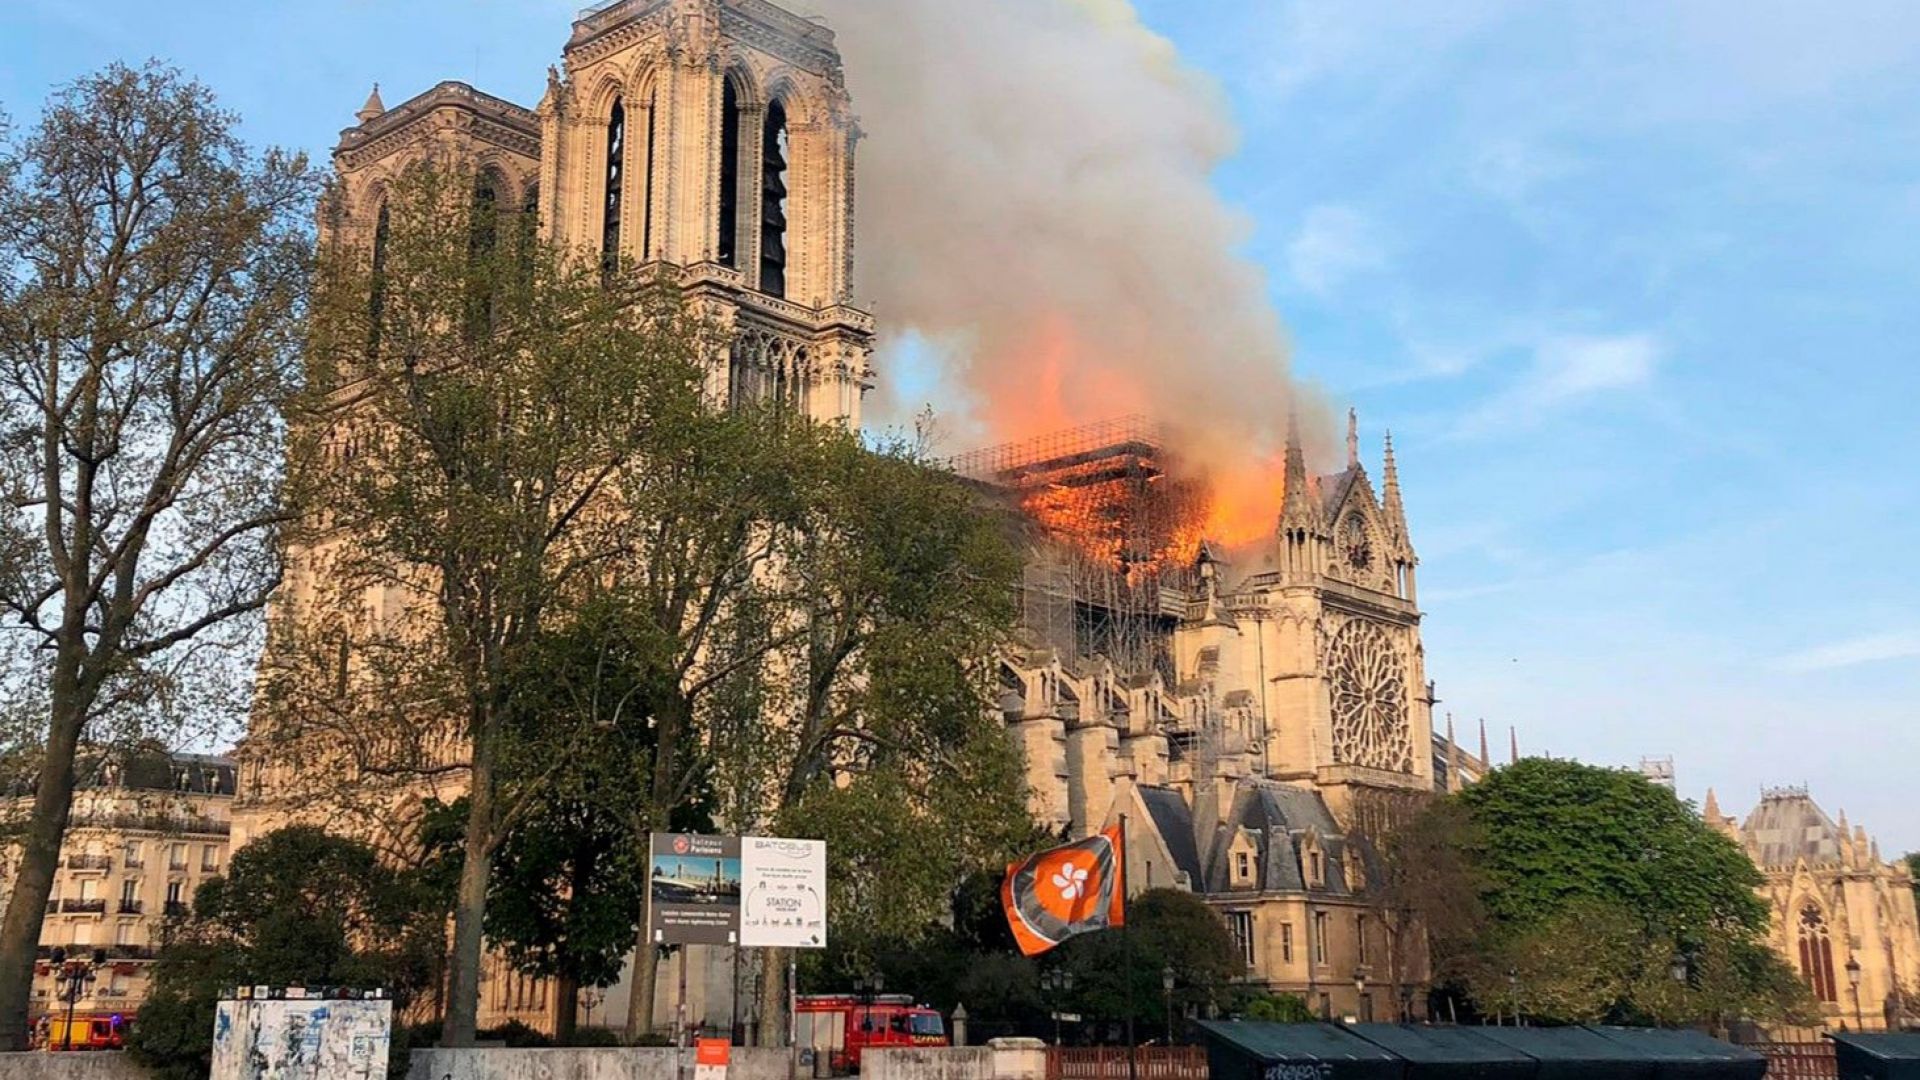  Нотр Дам в Париж гори, кулата и покривът рухнаха 